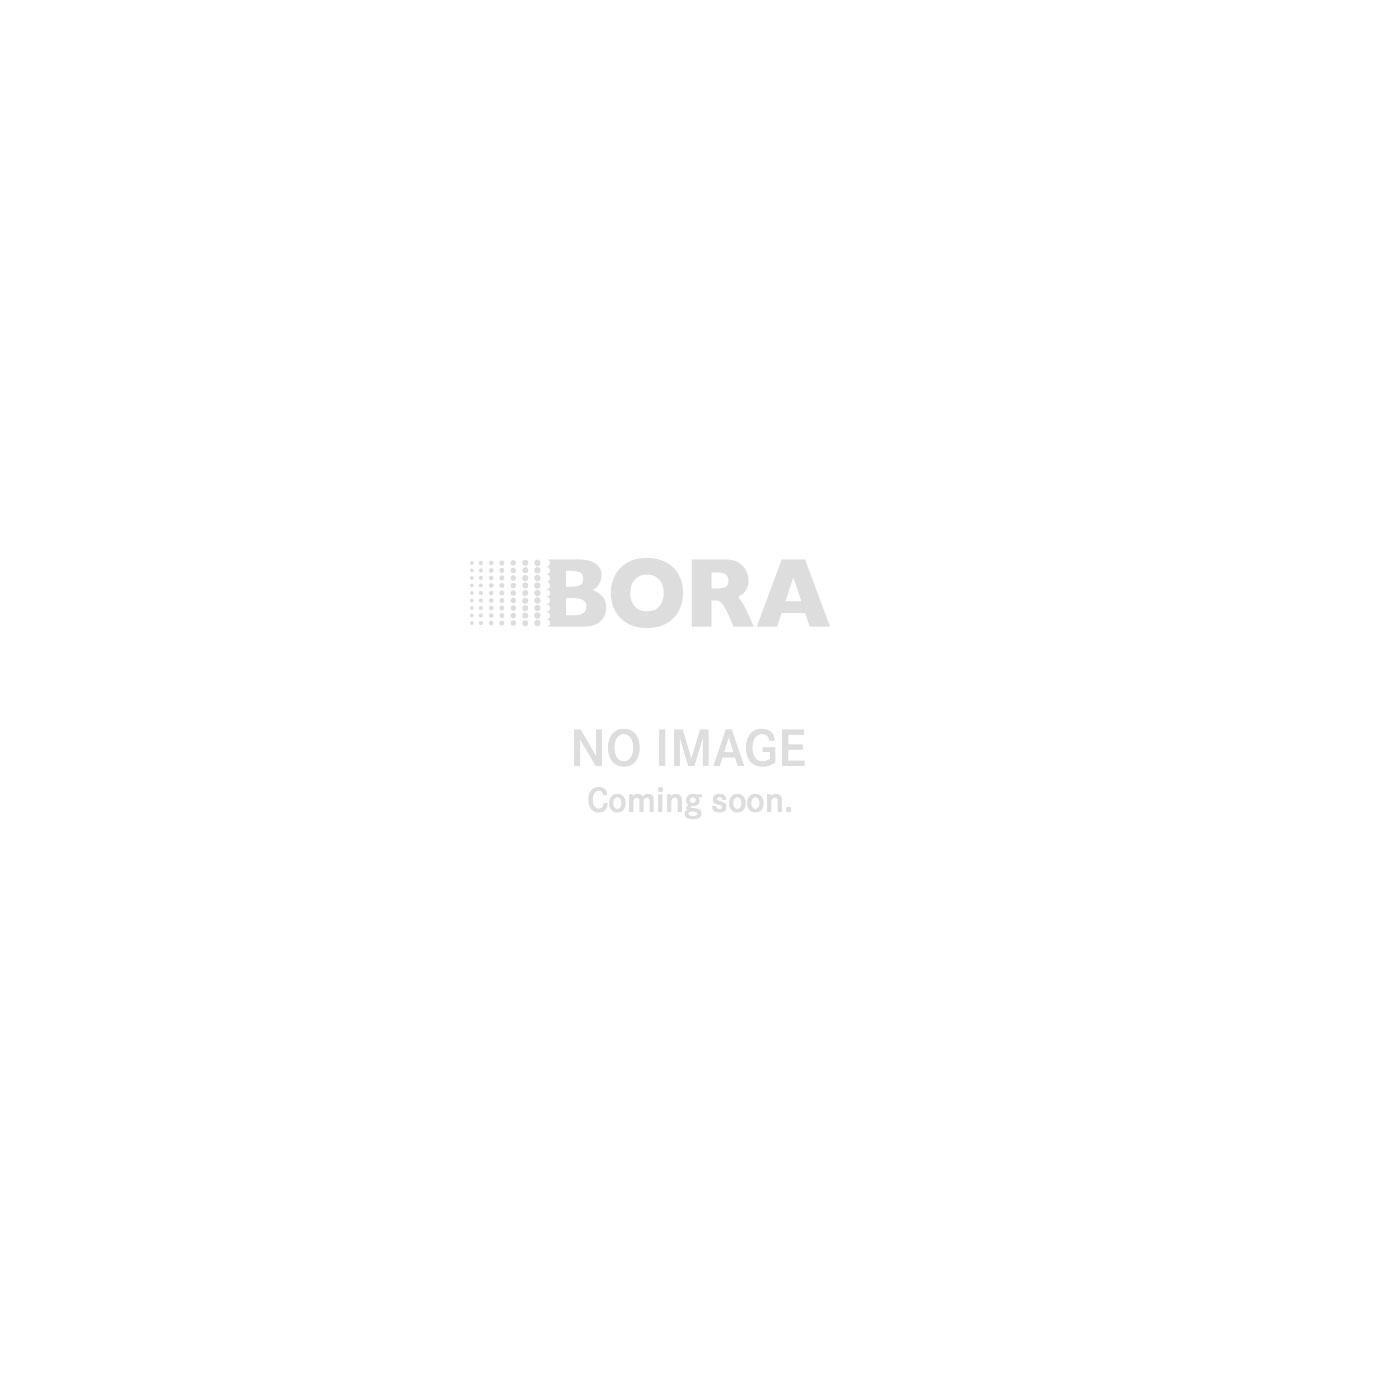 Doppelsieg: BORA ist "Beste Marke des Jahres", BORA Classic 2.0 "Bestes Produkt des Jahres"